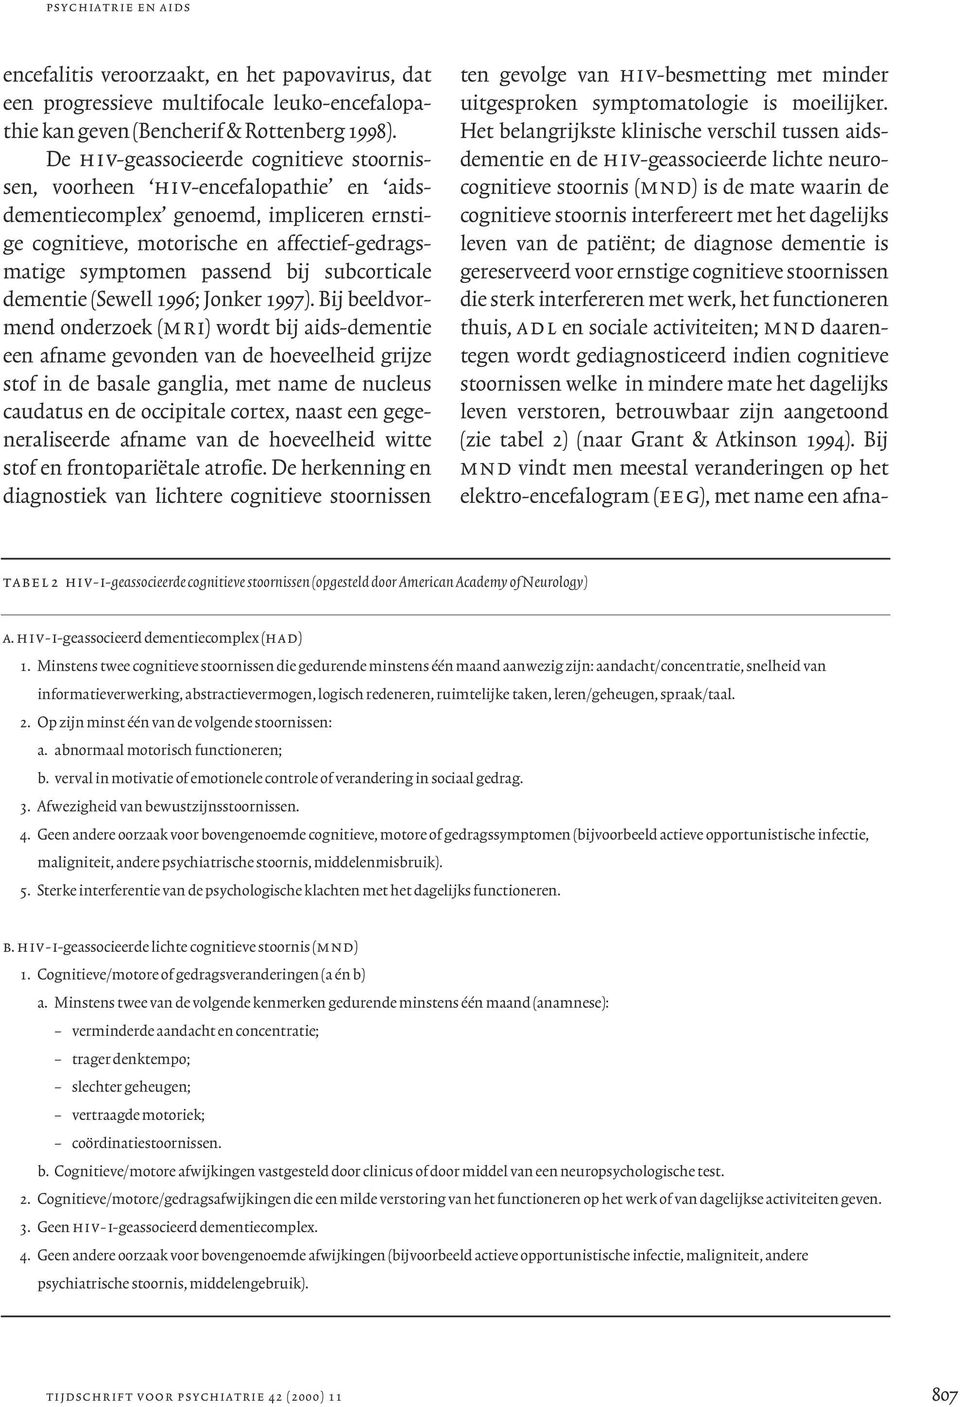 subcorticale dementie (Sewell 1996; Jonker 1997).